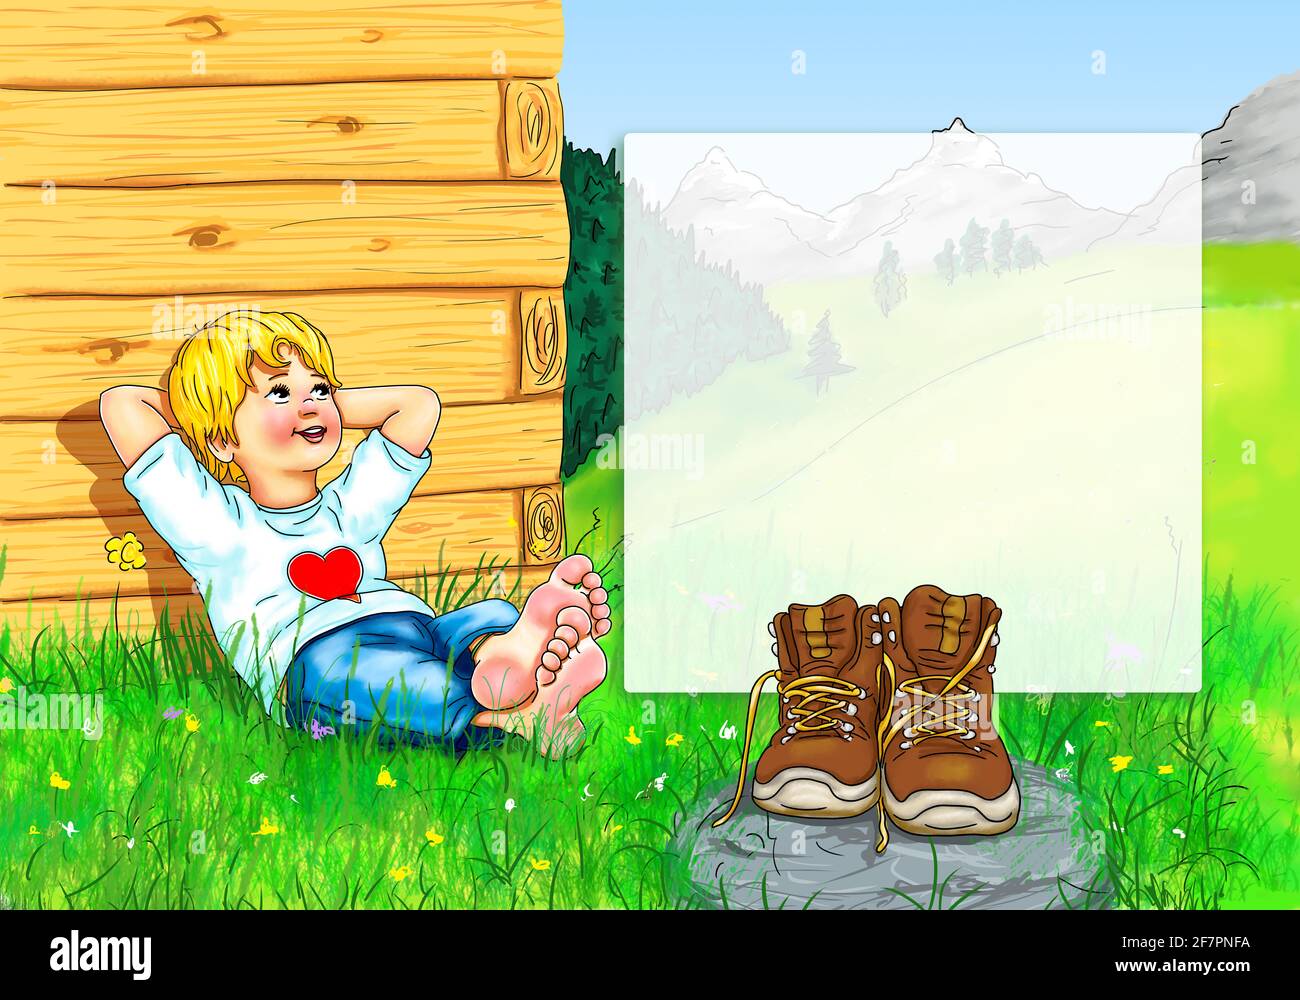 Vorlage Junge Kind sitzt barfuß bequem Hände Ajar hinter dem Kopf Lächeln  Blick nach oben Wanderer Schuhe brechen Berge Allgäu Bayern Österreich  Schweiz Stockfotografie - Alamy